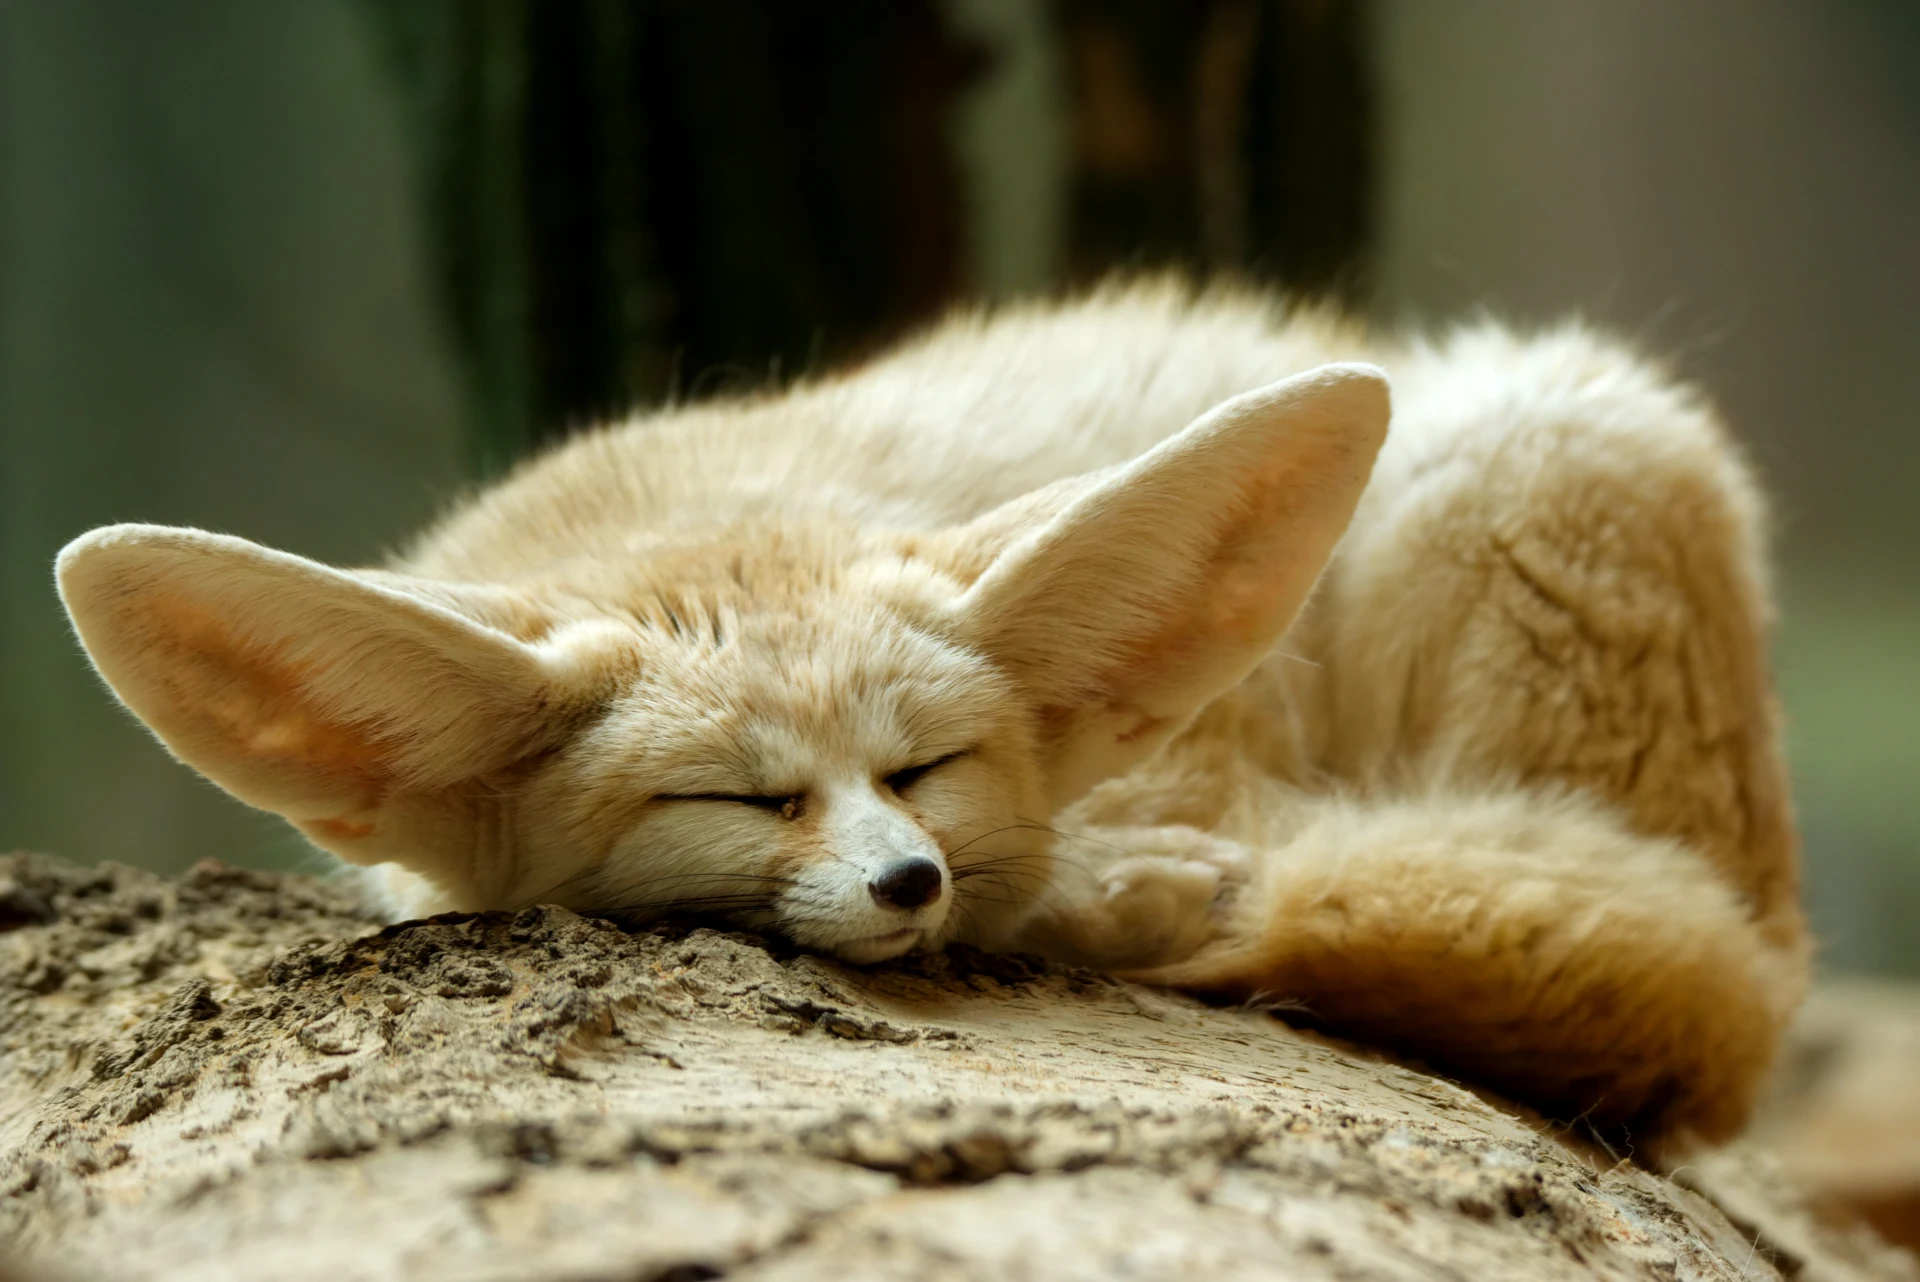 Slightly grumpy looking fennec fox sleeping in a sunny spot on a tree log.